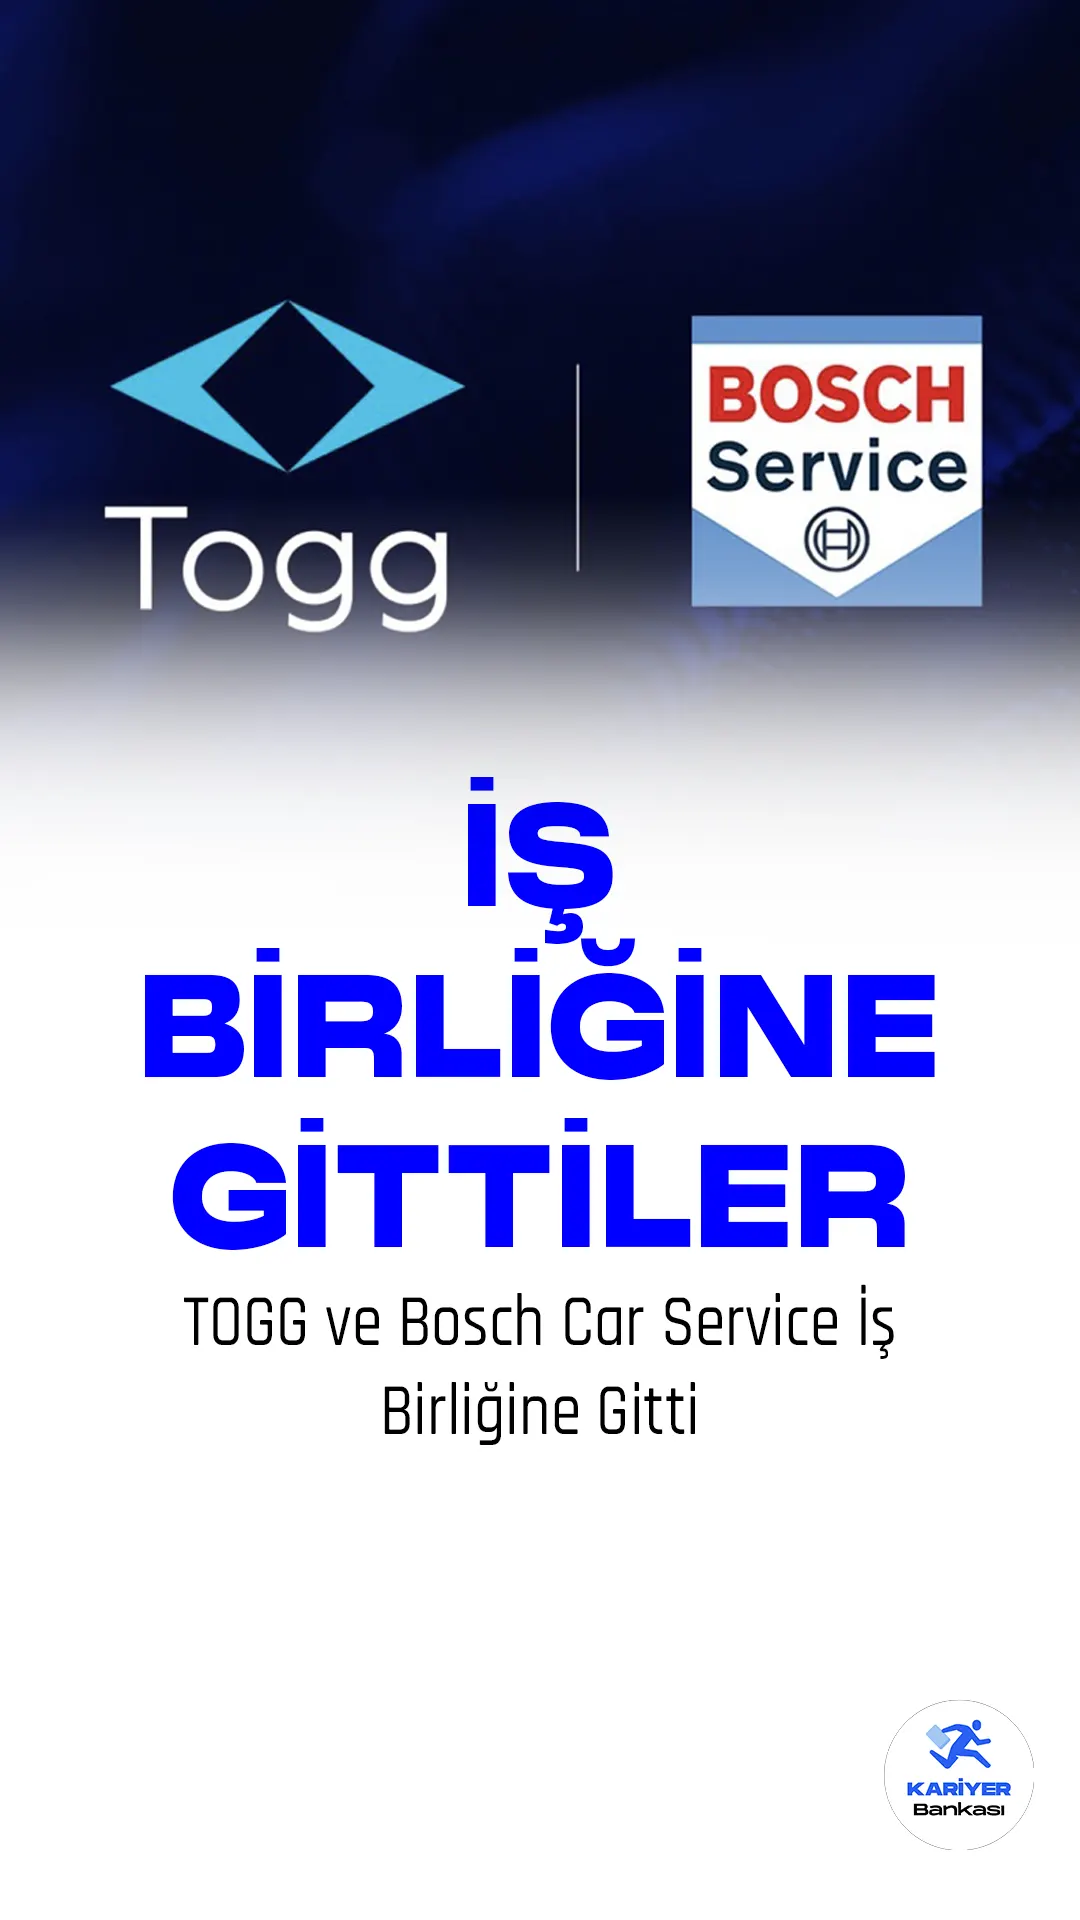 Togg, ilk akıllı cihazı T10X'in kullanıcılara sunmaya hazırlanıyor. Togg, doğrudan satış modelini benimseyerek hibrit bir yapıda hizmet verecek.